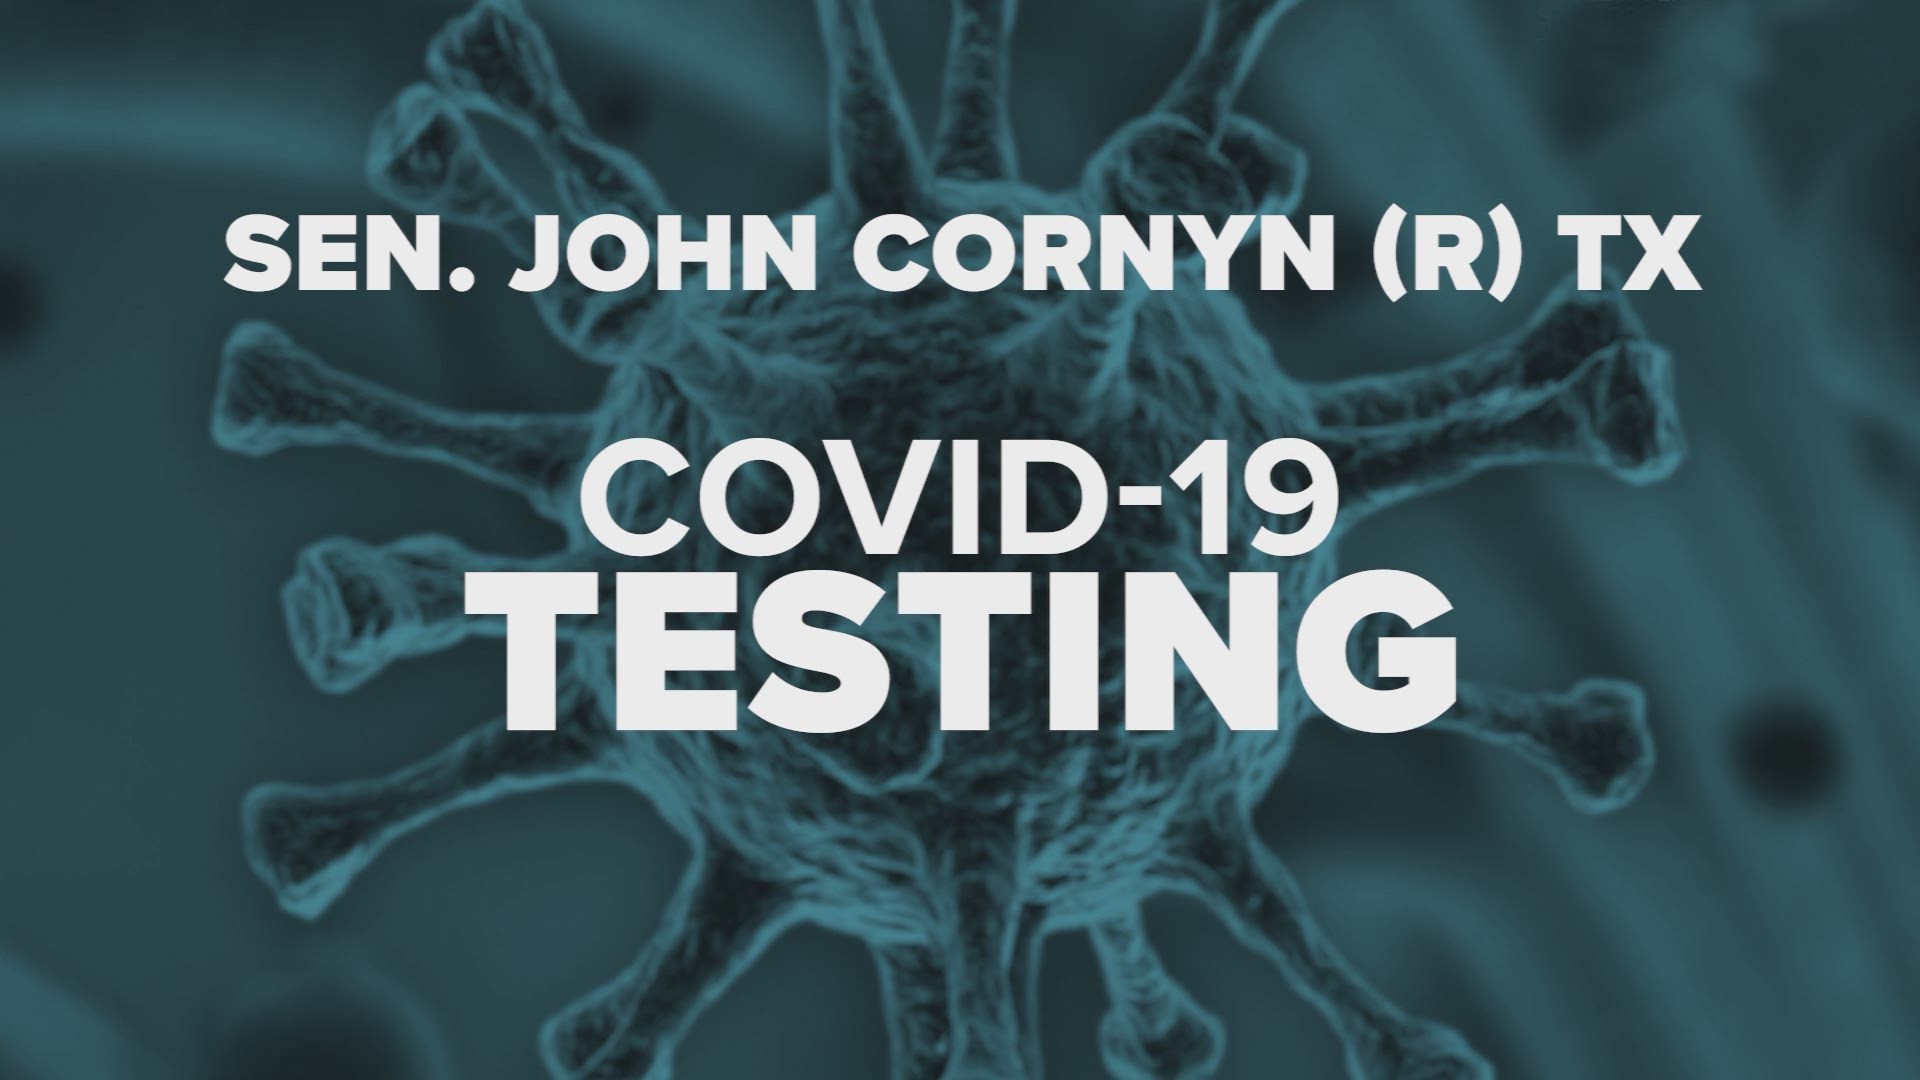 Sen. John Cornyn on coronavirus testing in Texas.